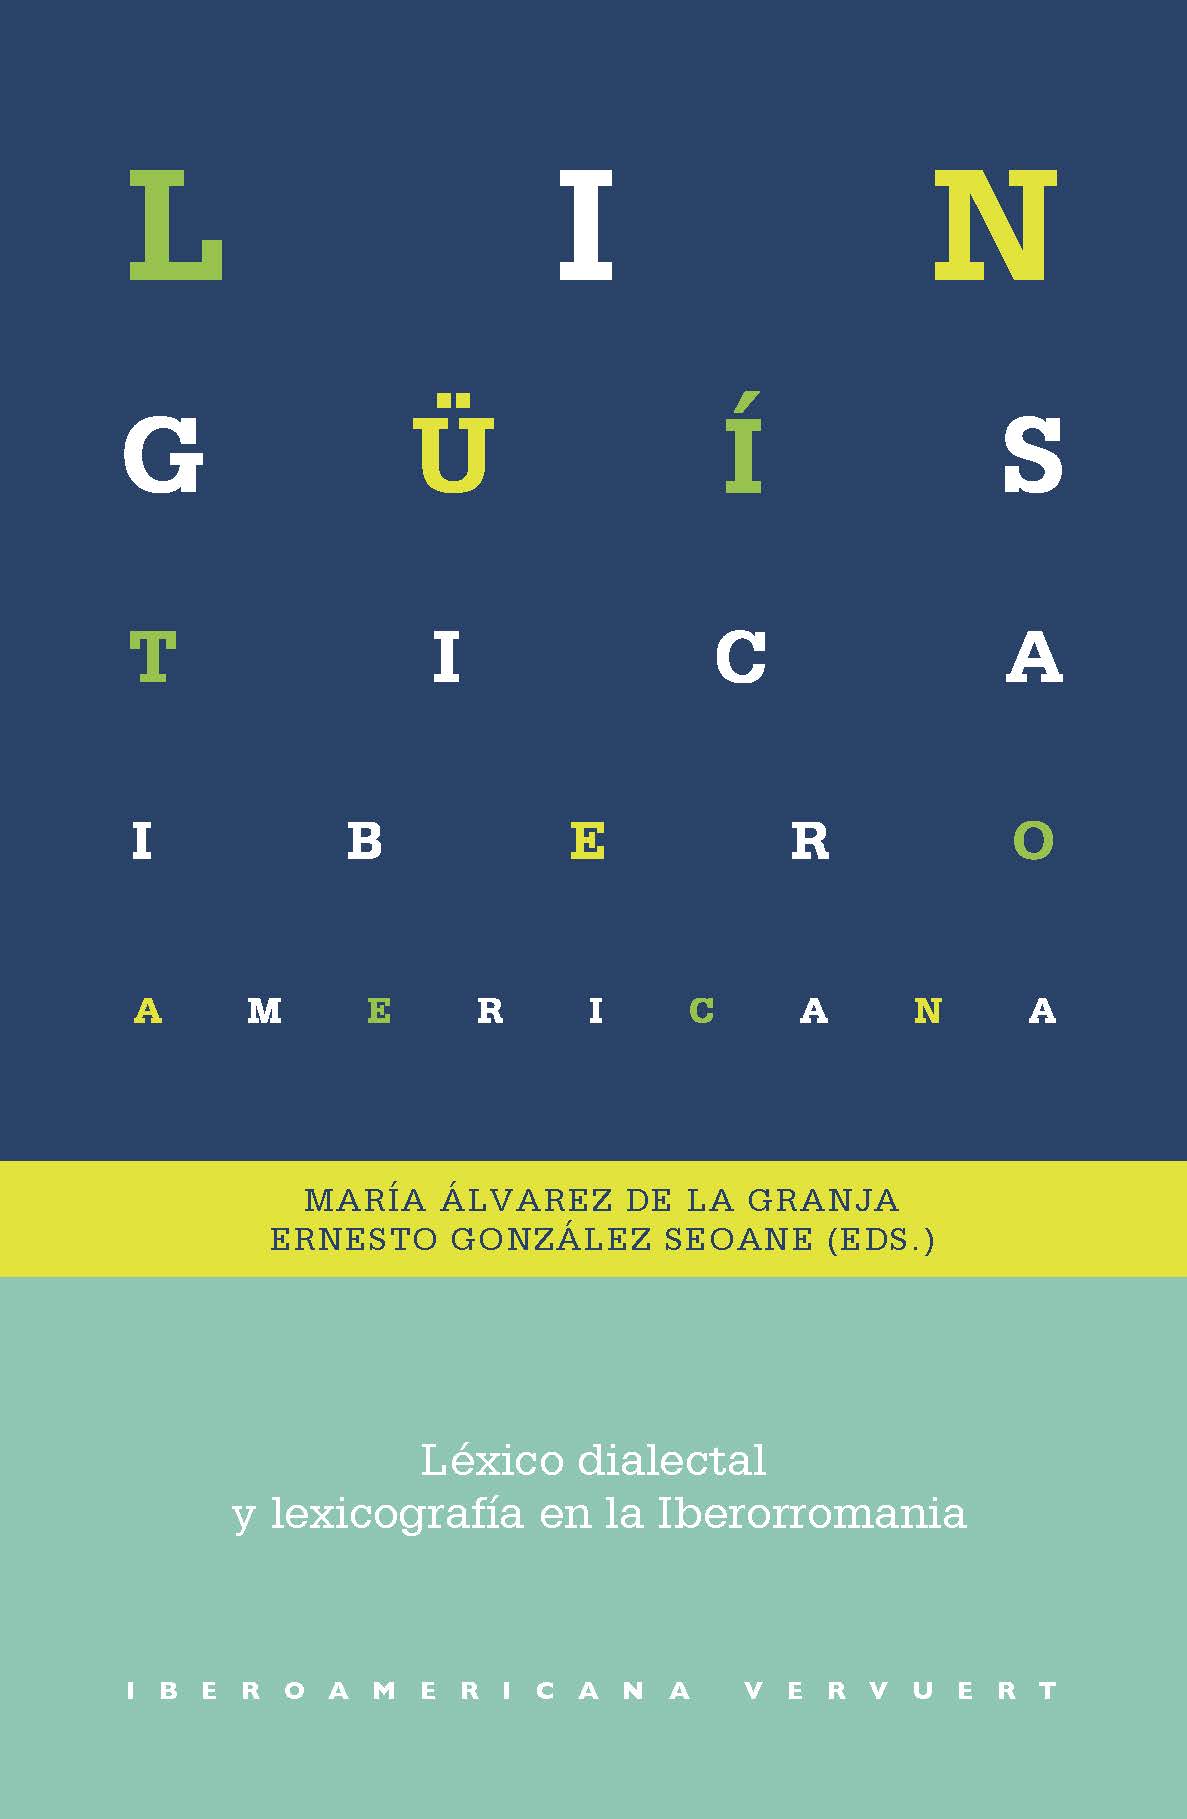 Imagen de portada del libro Léxico dialectal y lexicografía en la Iberorromania